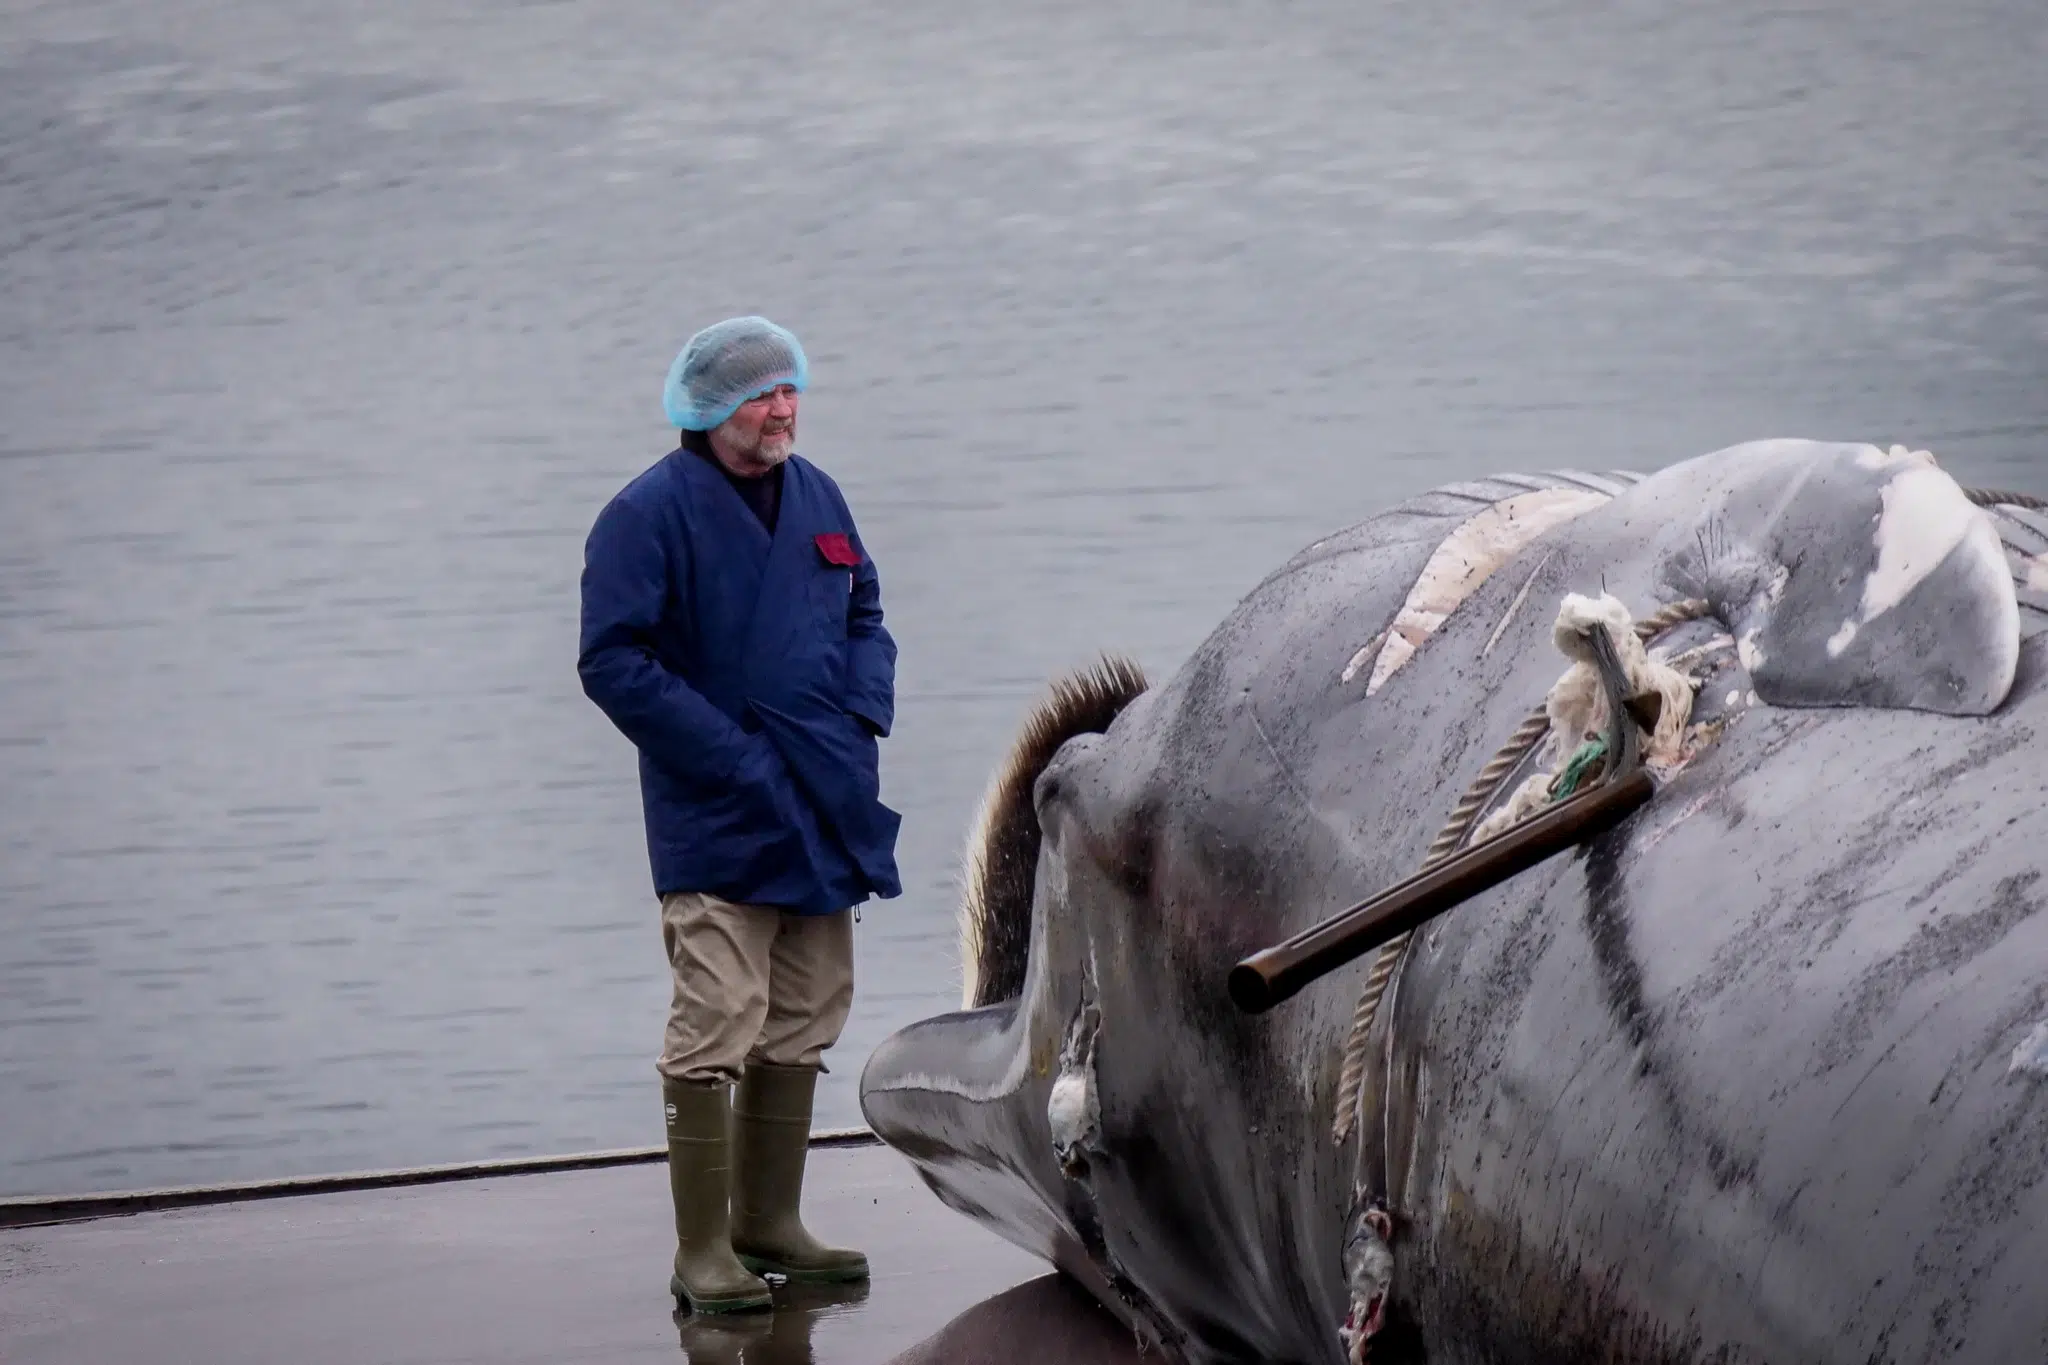 Waljagd: Erlegter Wal musste viermal beschossen werden